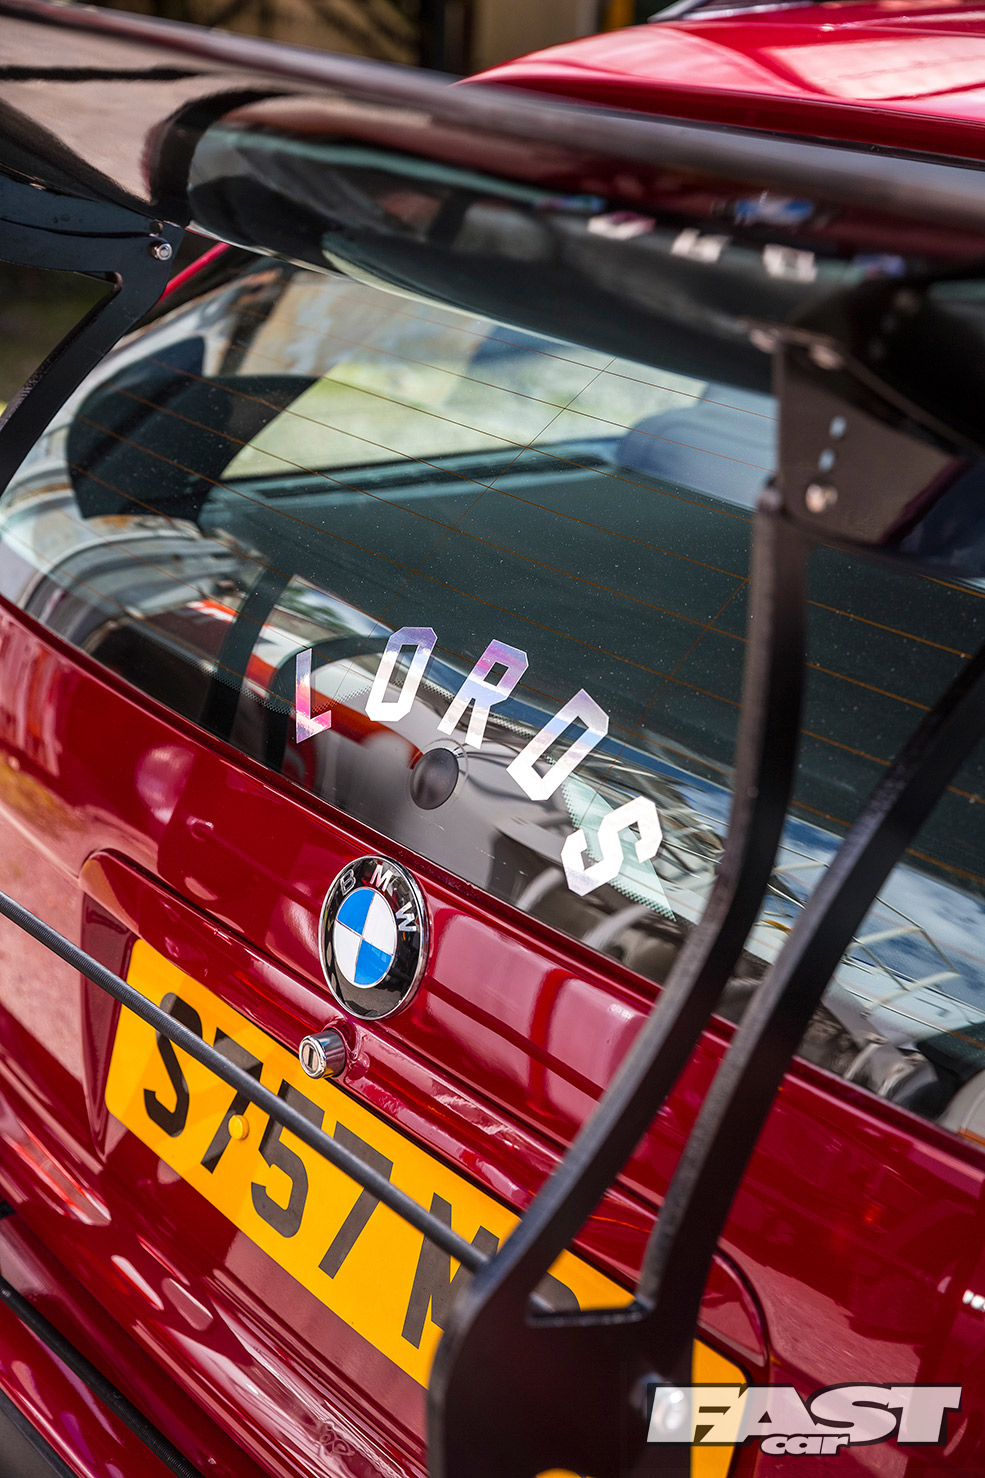 Modified BMW E36 M3 Touring